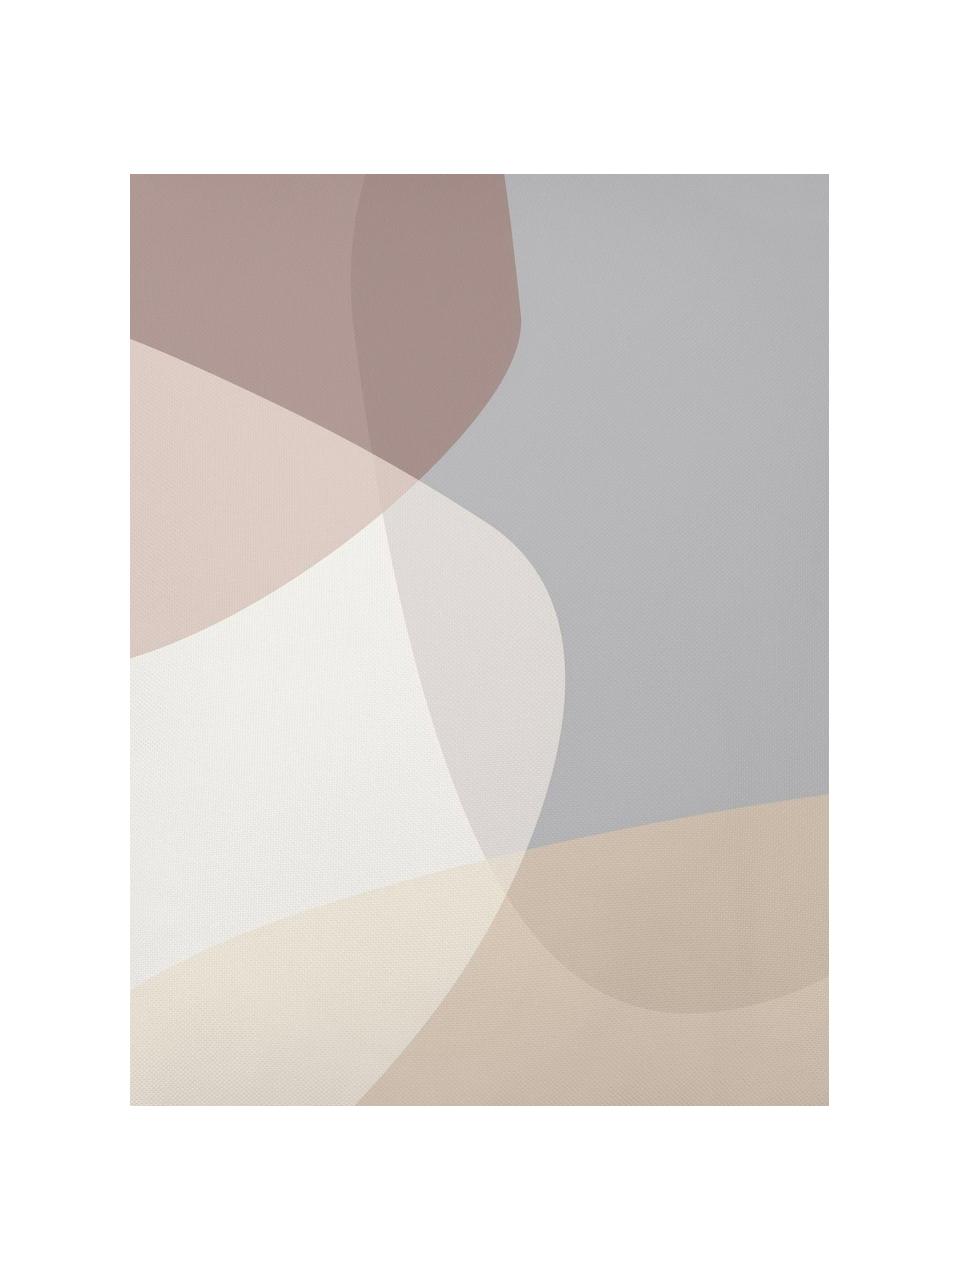 Kussenhoes Graphic met geometrisch Print, Polyester, Beige, grijs, crèmekleurig, oudroze, 40 x 40 cm